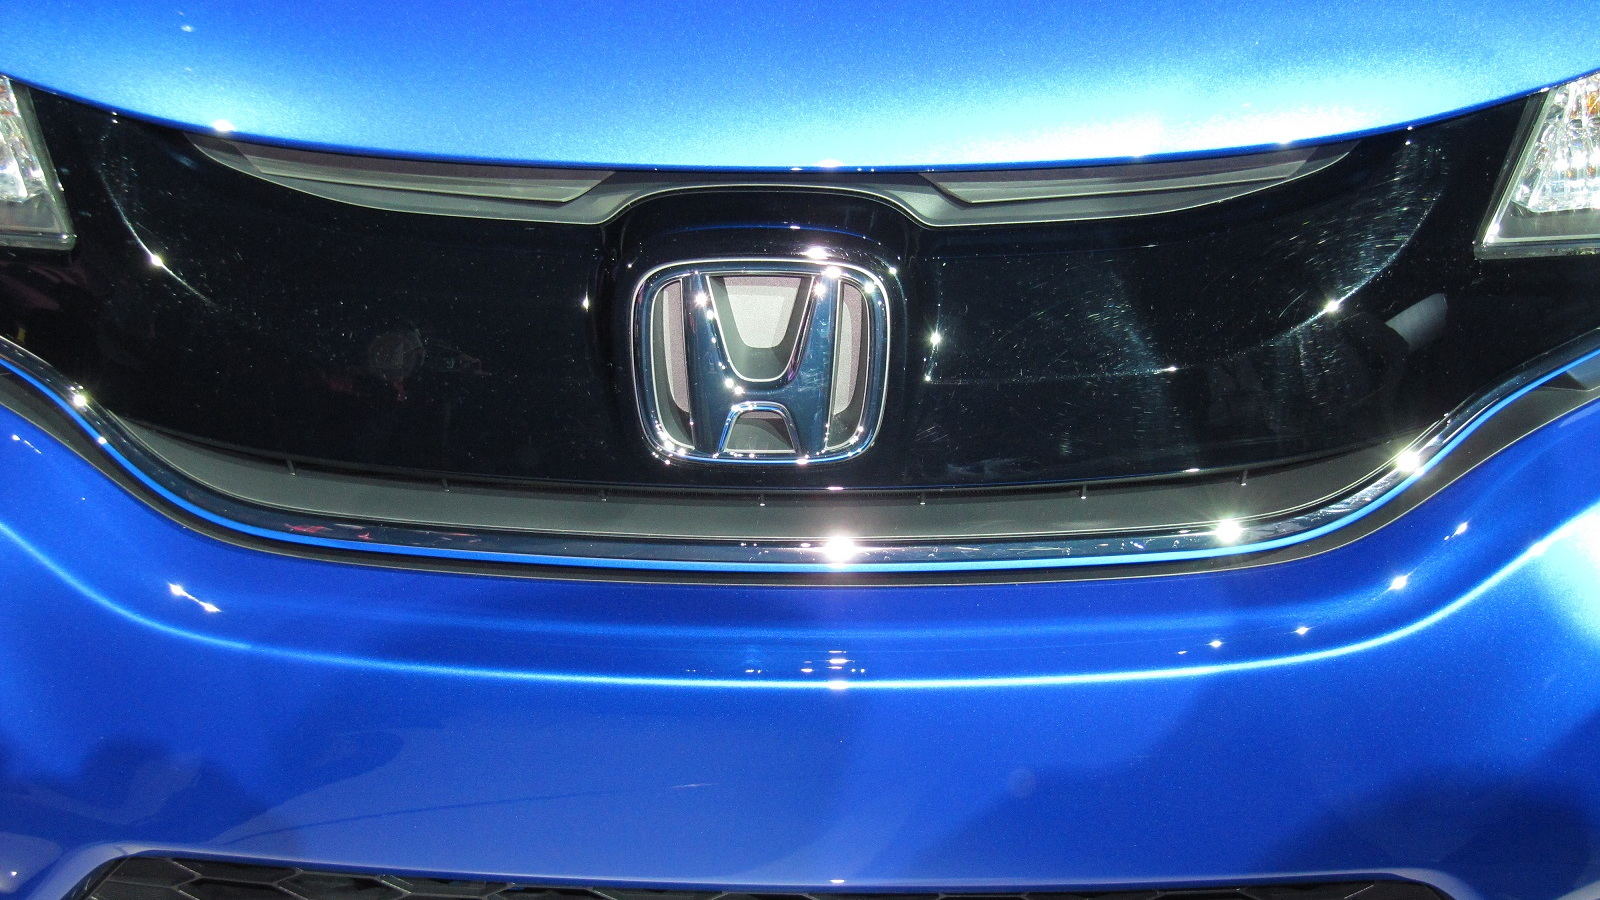 2015 Honda Fit launch at 2014 Detroit Auto Show